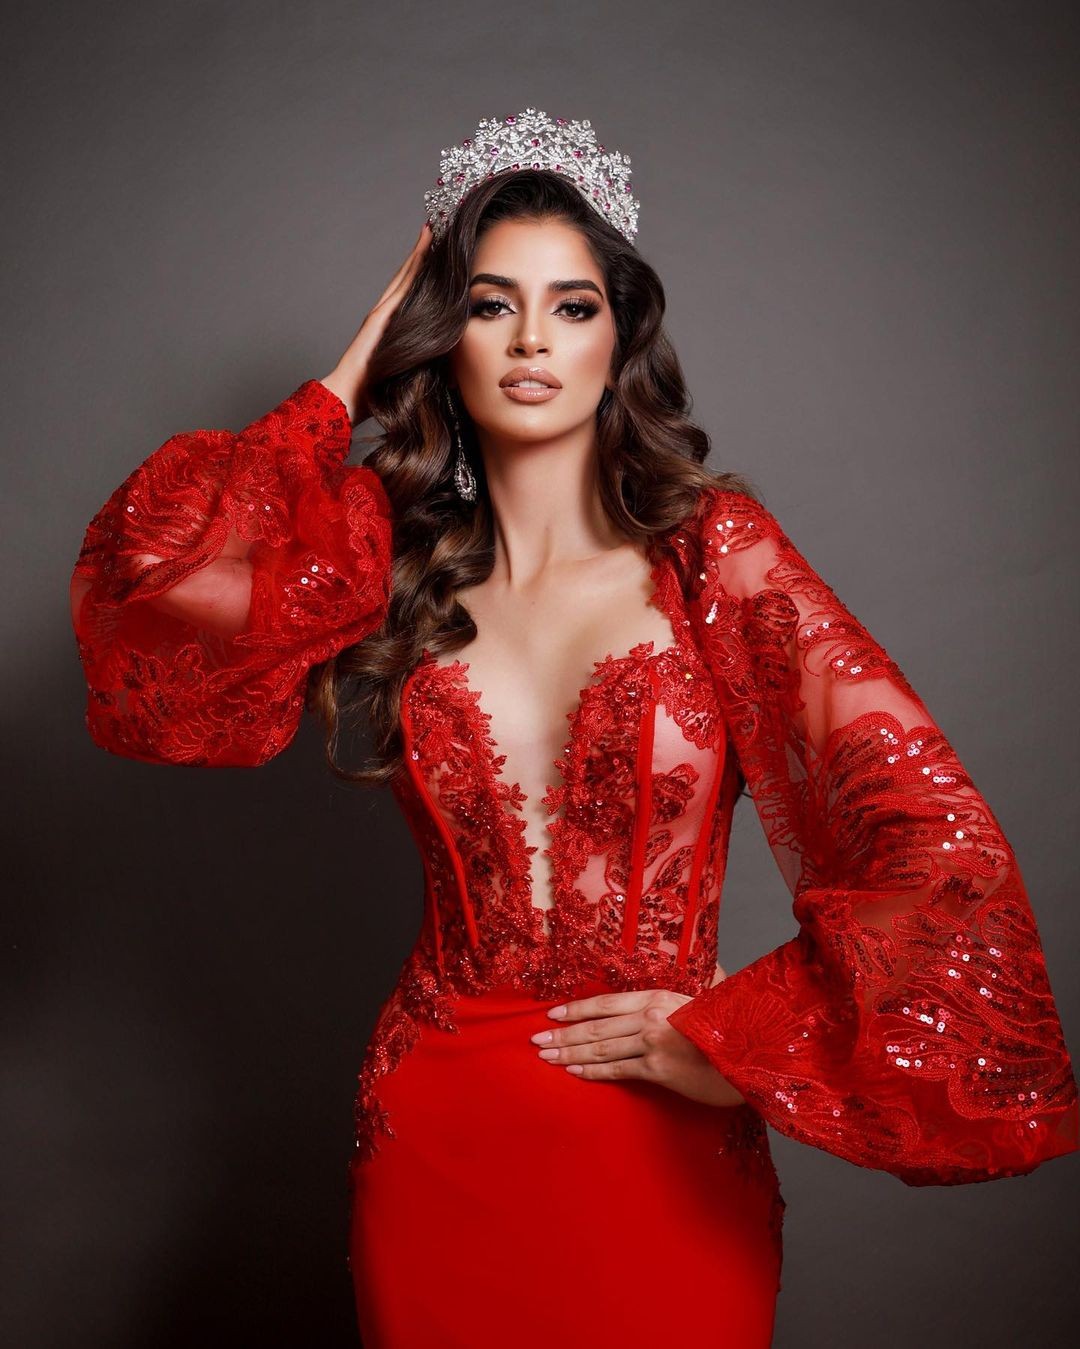 Nhan sắc Hoa hậu Hoàn vũ Mexico 2023 có chiều cao 1,81 m ảnh 1